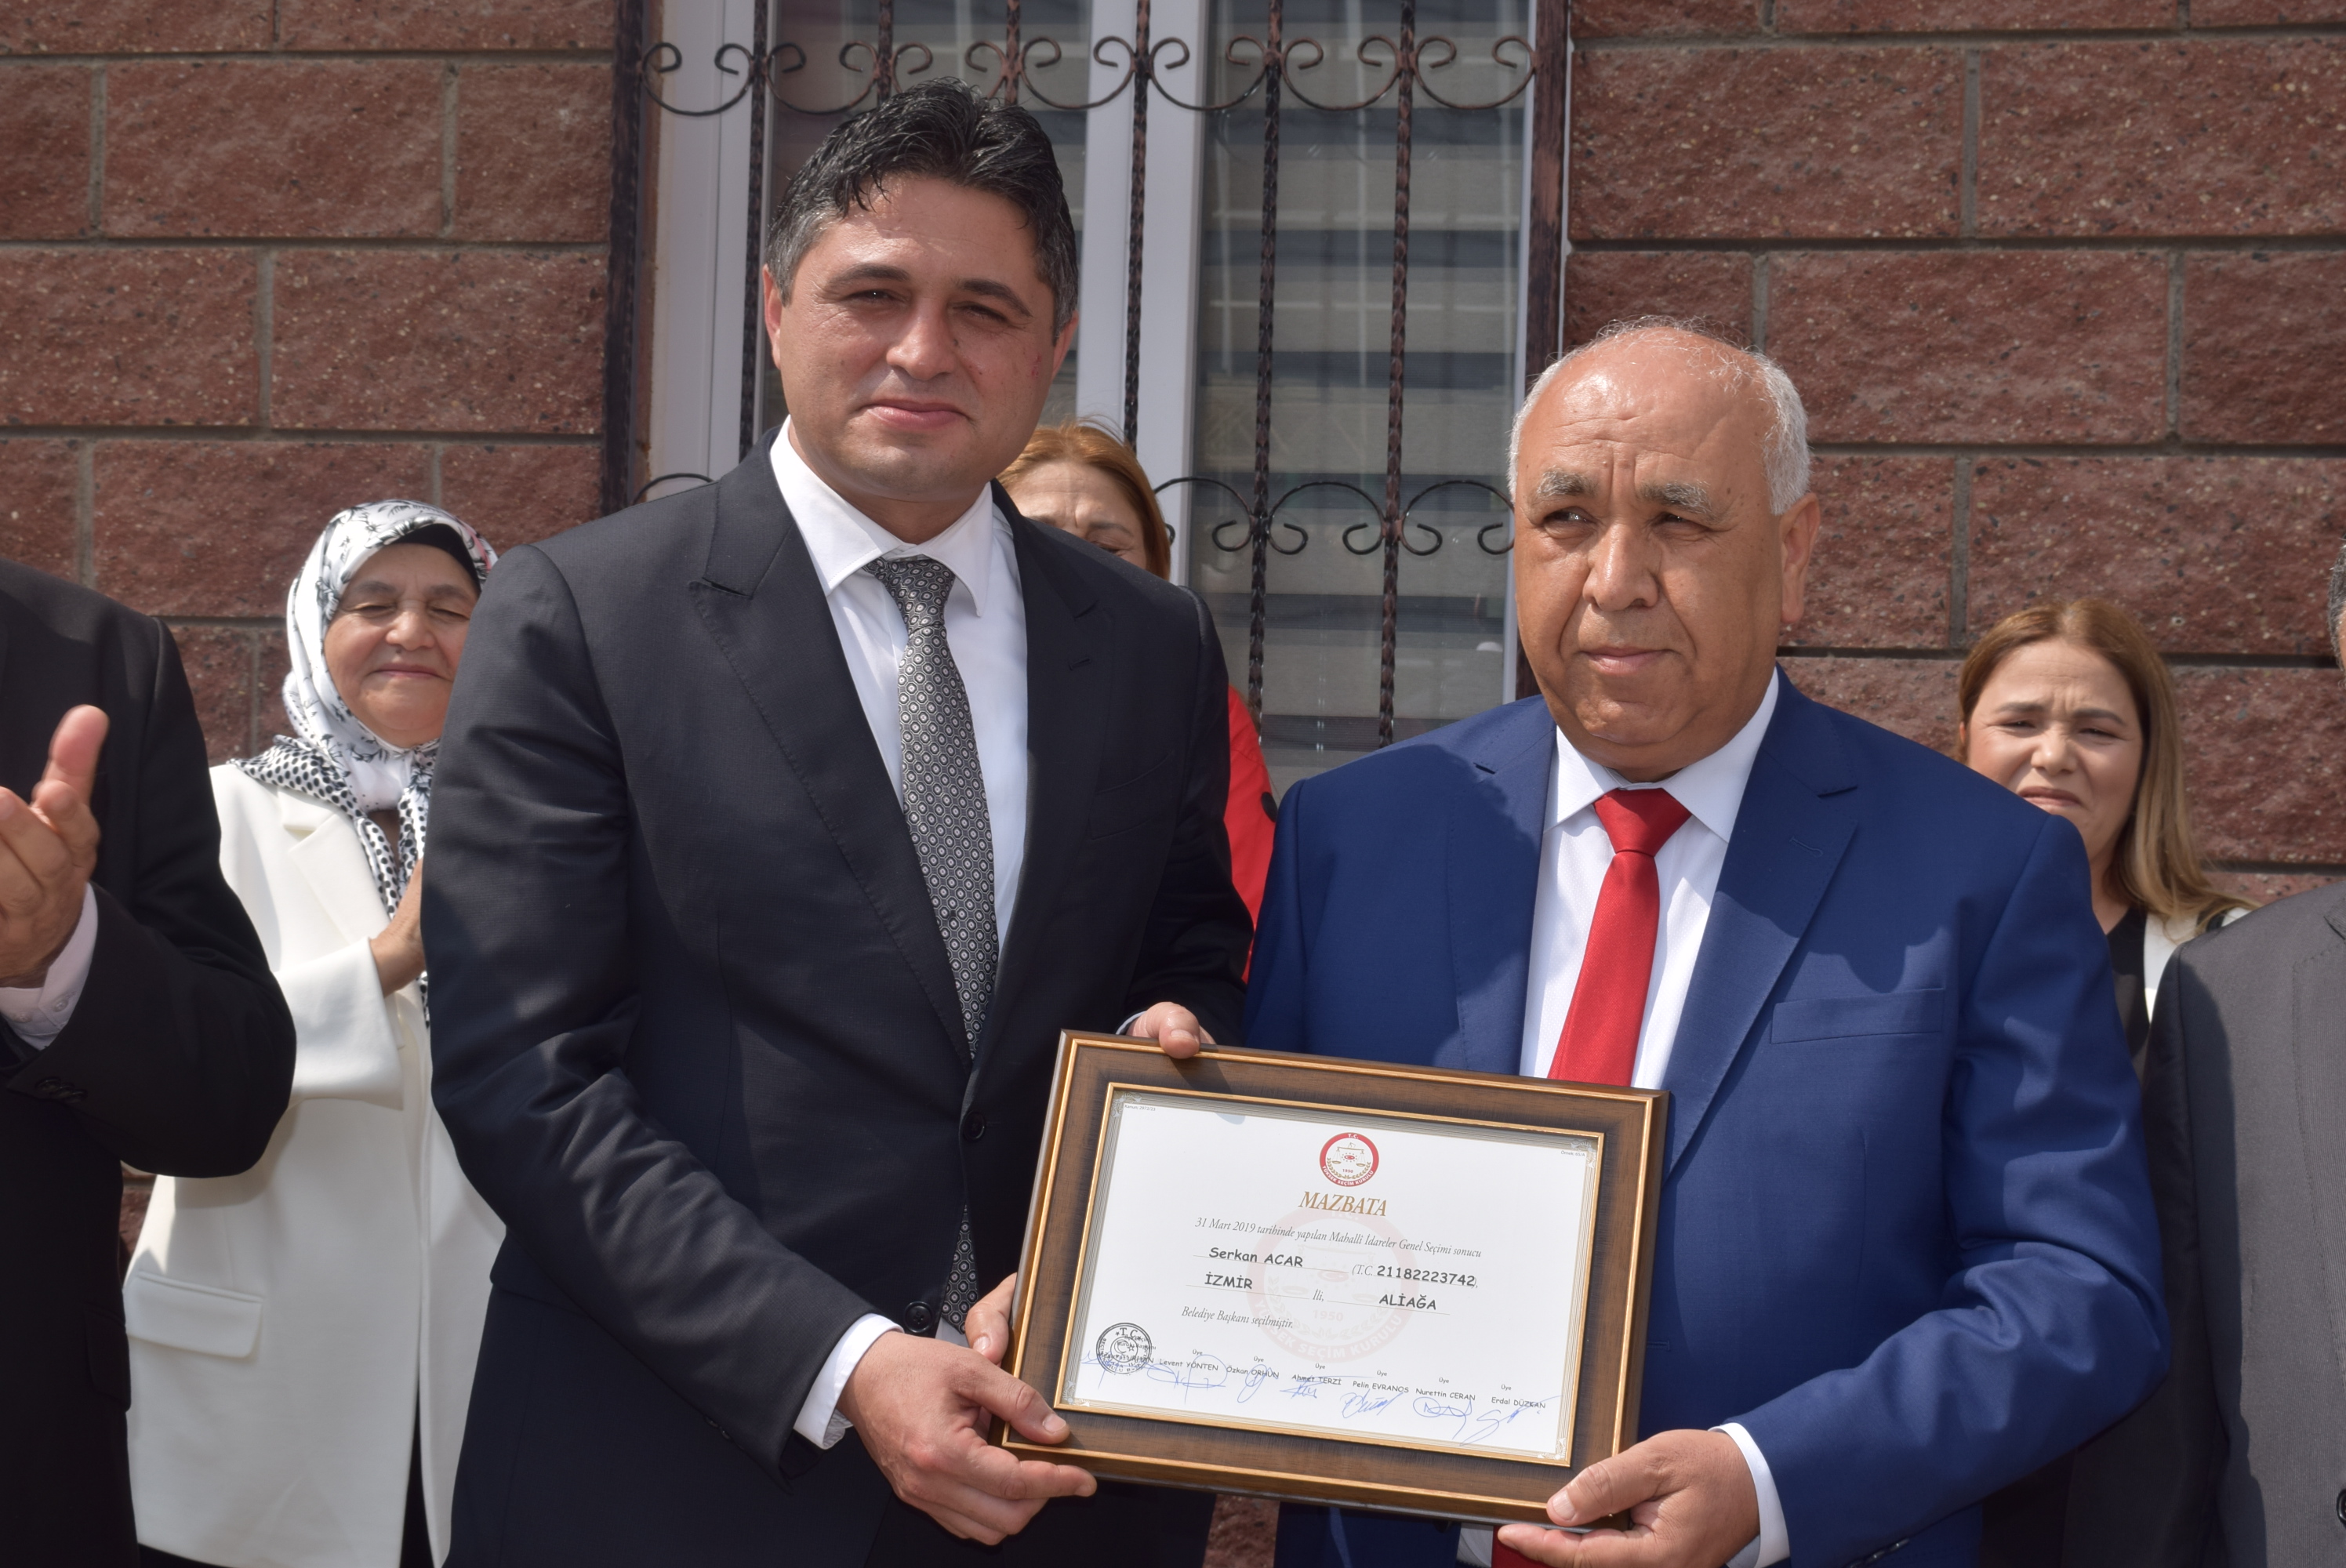 İkinci kez Şehrül Emin olan Aliağa Belediye Başkanı Serkan Acar, mazbatasını aldı